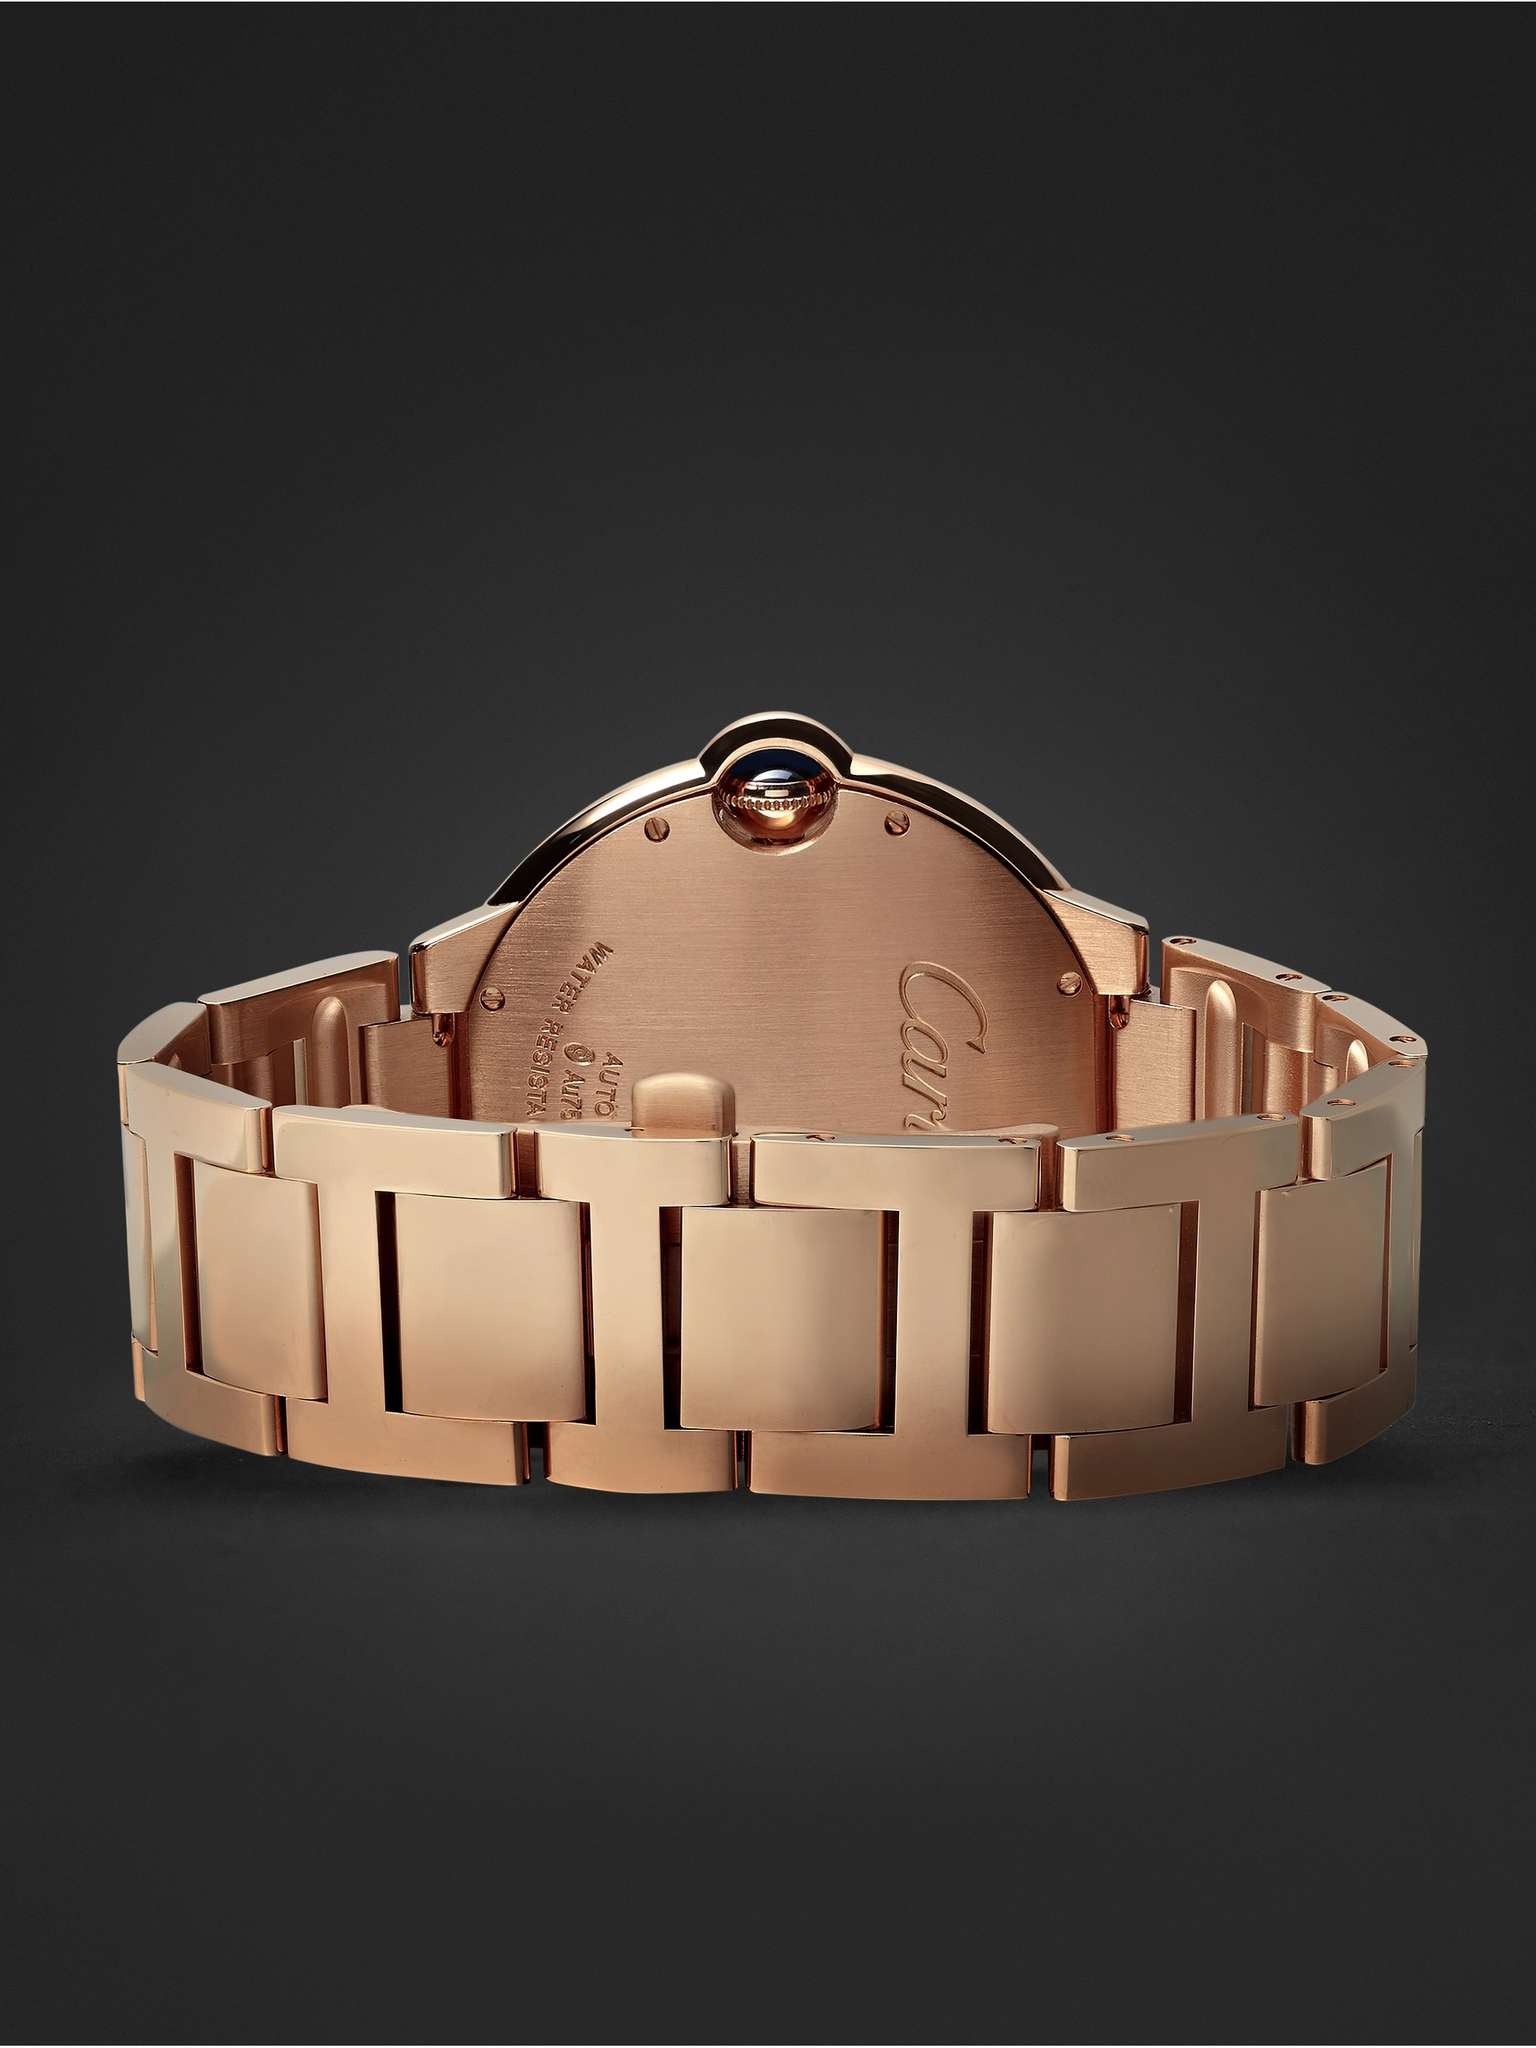 Ballon Bleu de Cartier Automatic 42mm 18-Karat Pink Gold Watch, Ref. No. CRWGBB0016 - 7